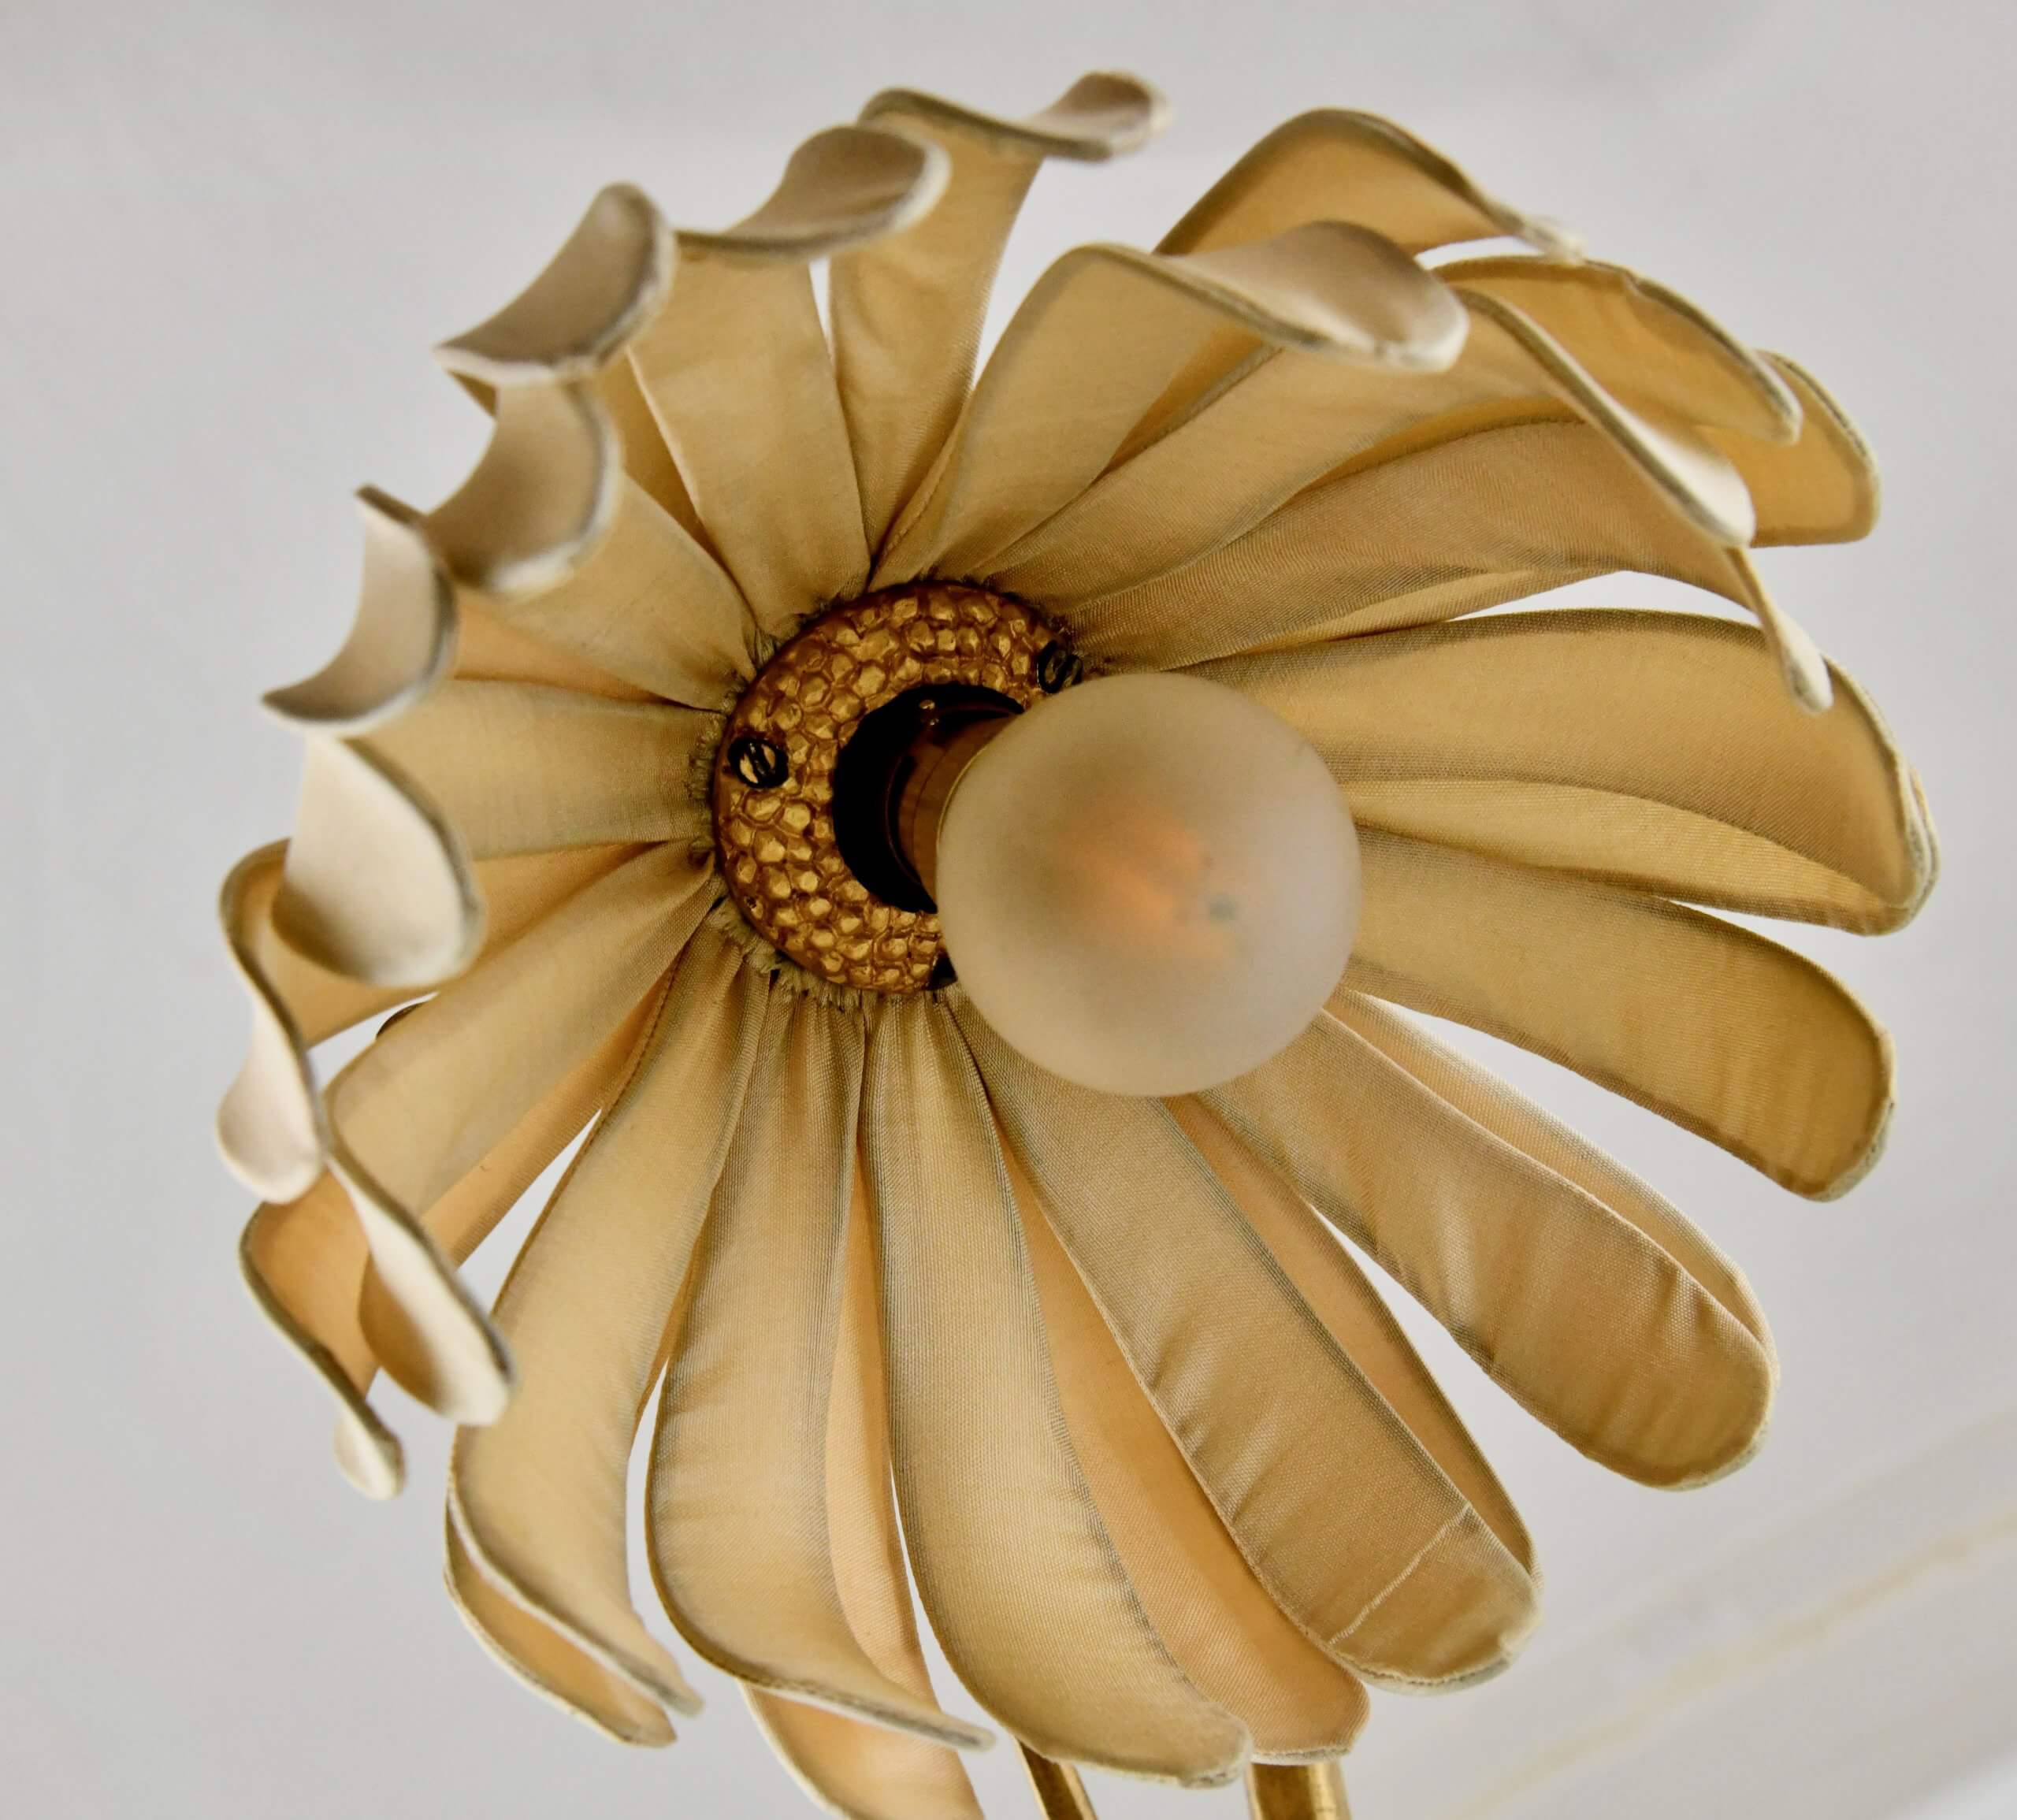 Art Nouveau verguld bronzen lamp met zittend naakt